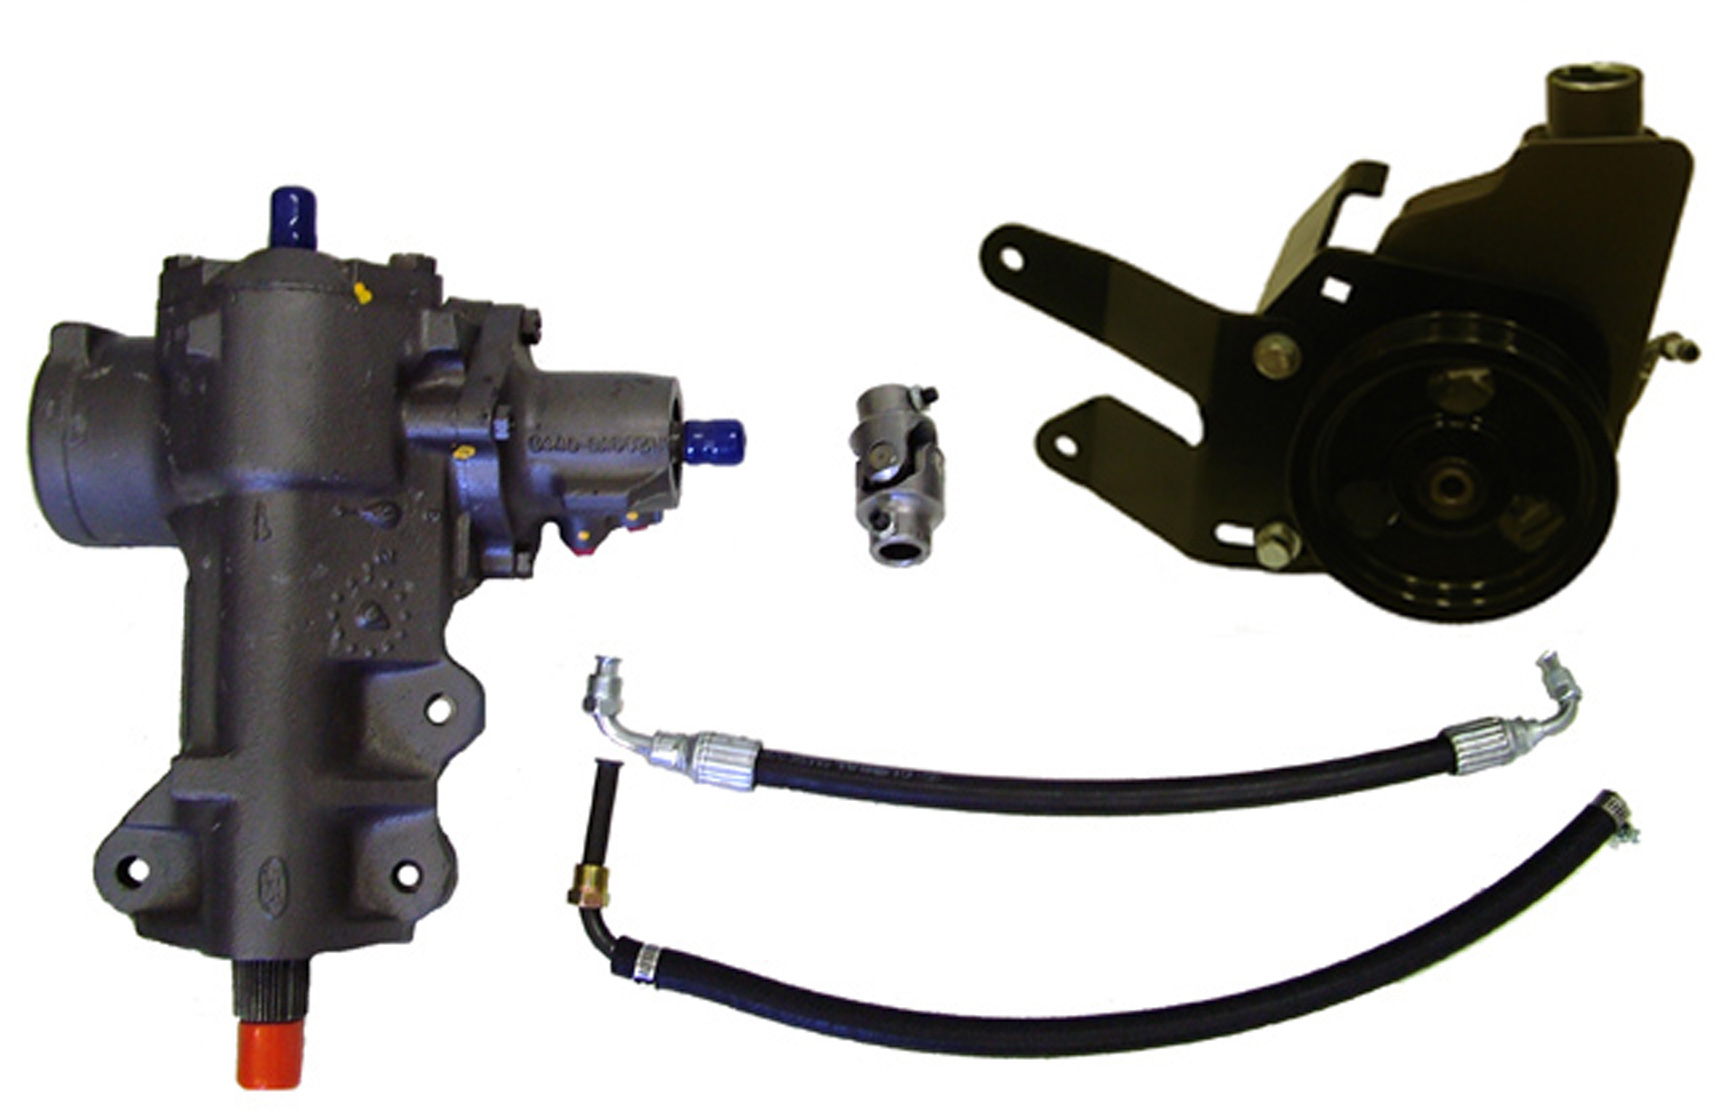 48-41021 Power Steering Kit, Multi Steer Bracket S Belt F-150 4X4 Box For Early Bronco